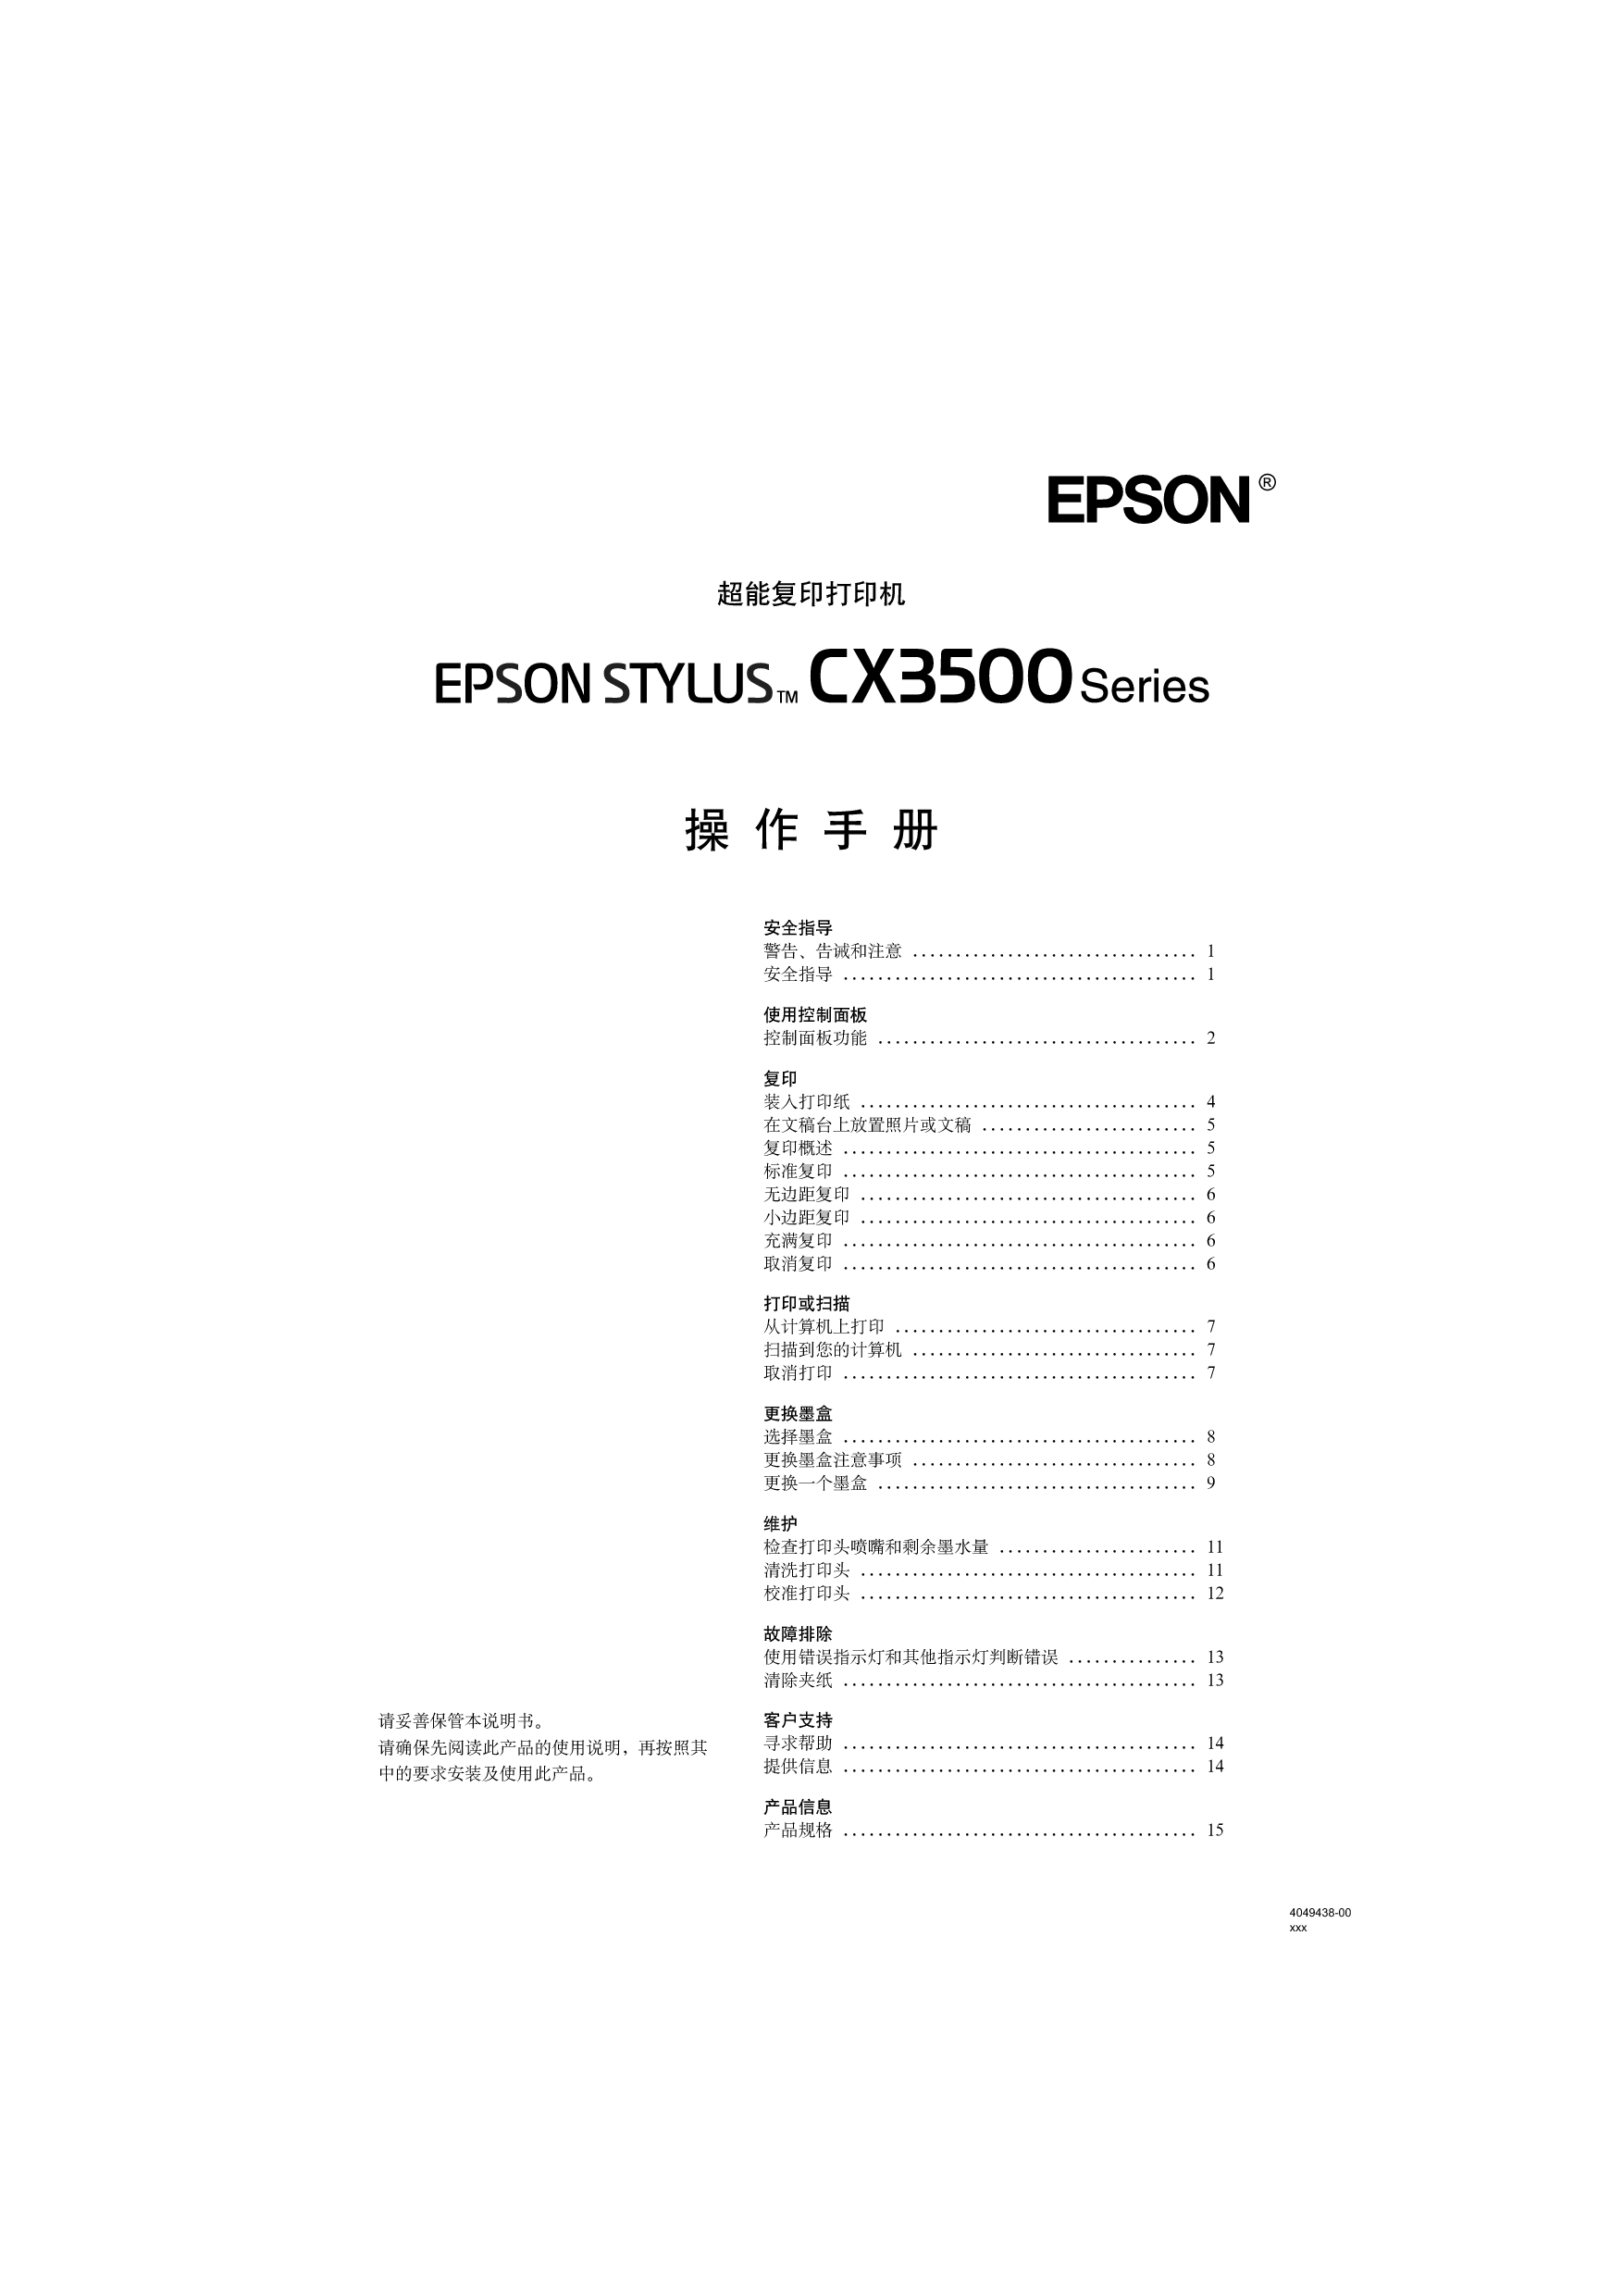 爱普生 Epson Stylus CX3500 操作手册 封面